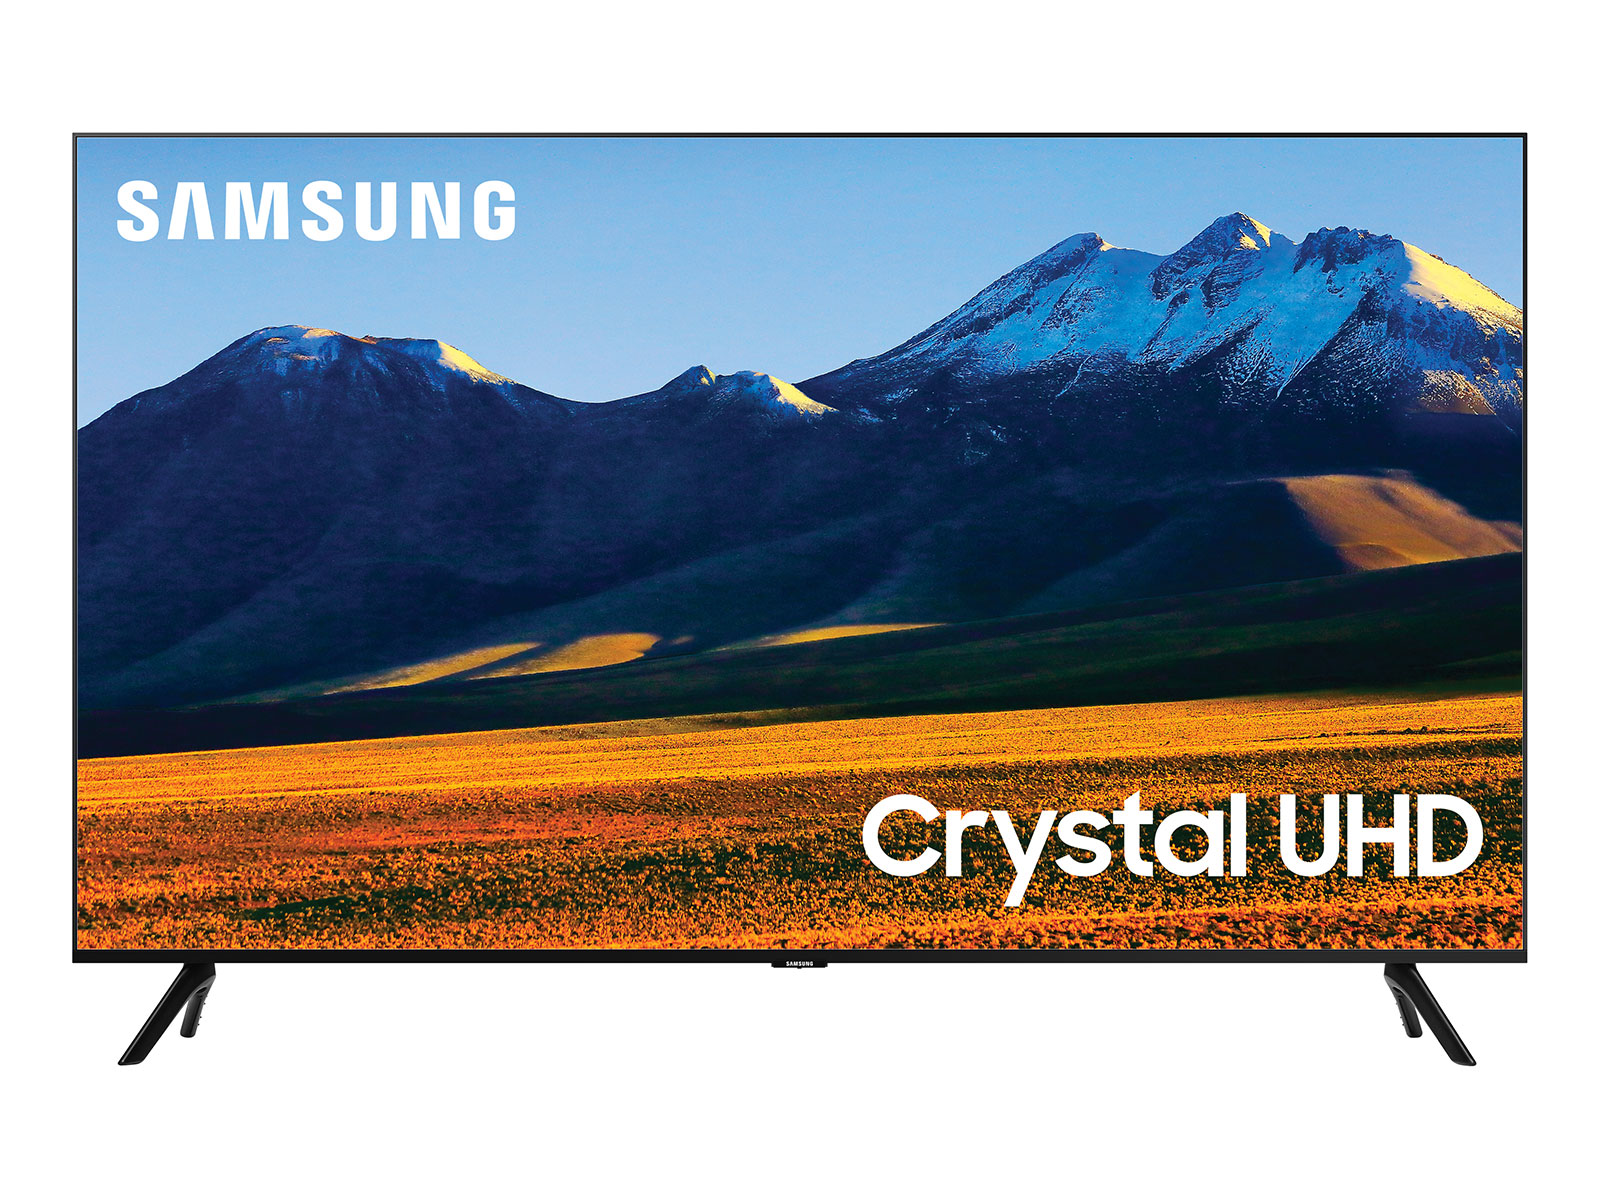 Bestrooi Een hekel hebben aan repertoire 86" Class TU9000 4K Crystal UHD HDR Smart TV (2020) TVs - UN86TU9000FXZA |  Samsung US